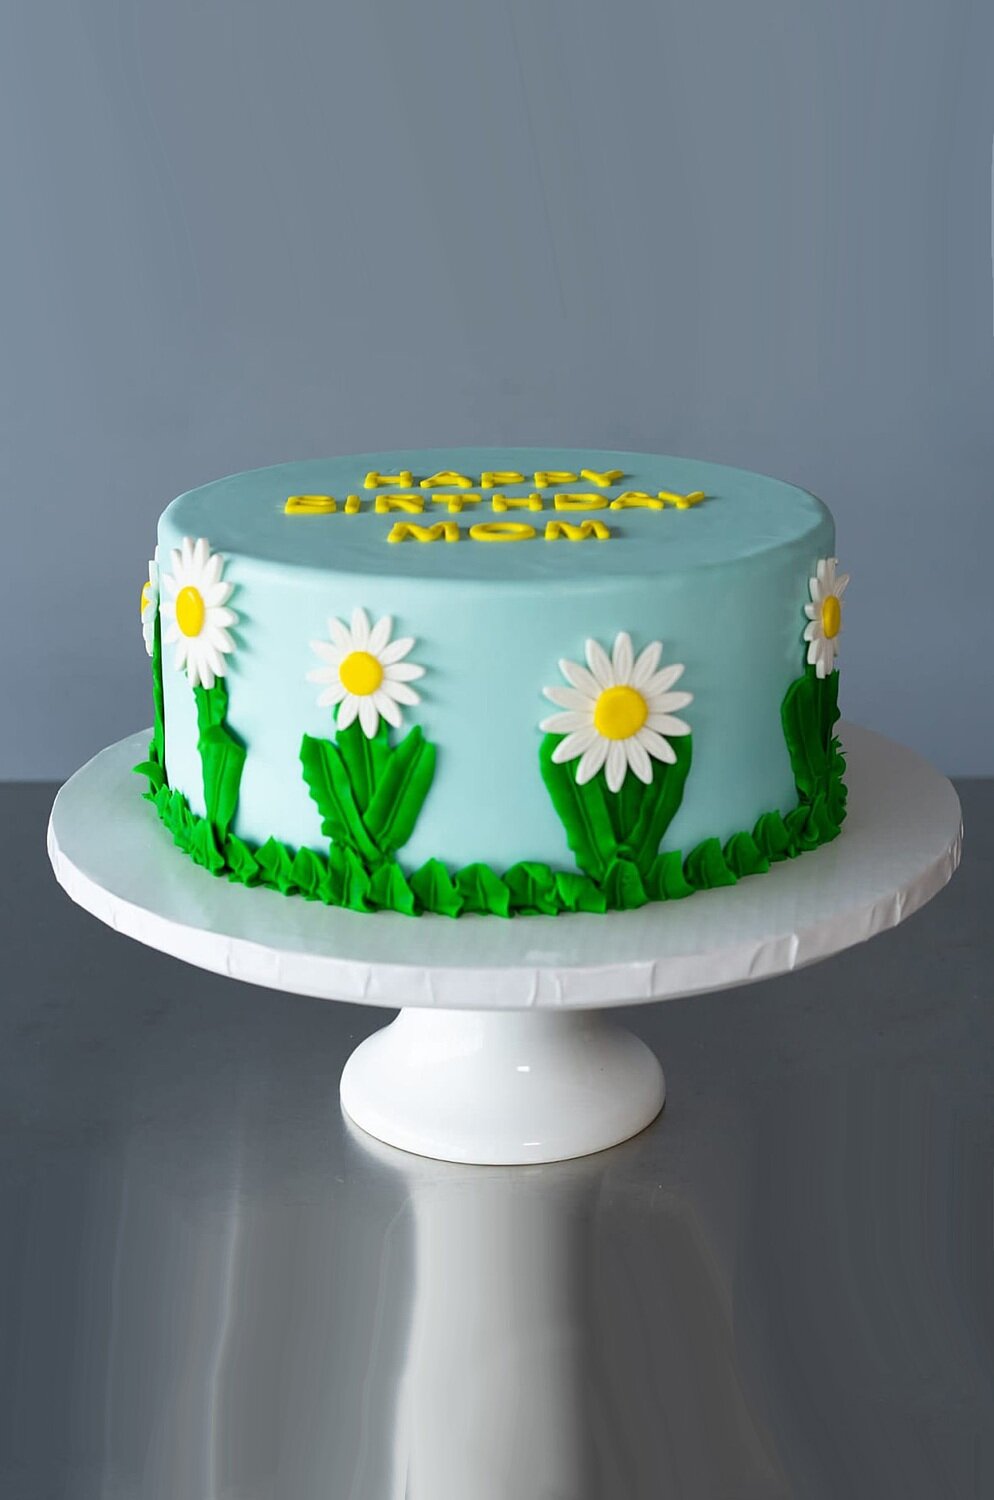 Cakes worth daisy 2020 net Daisy Cakes